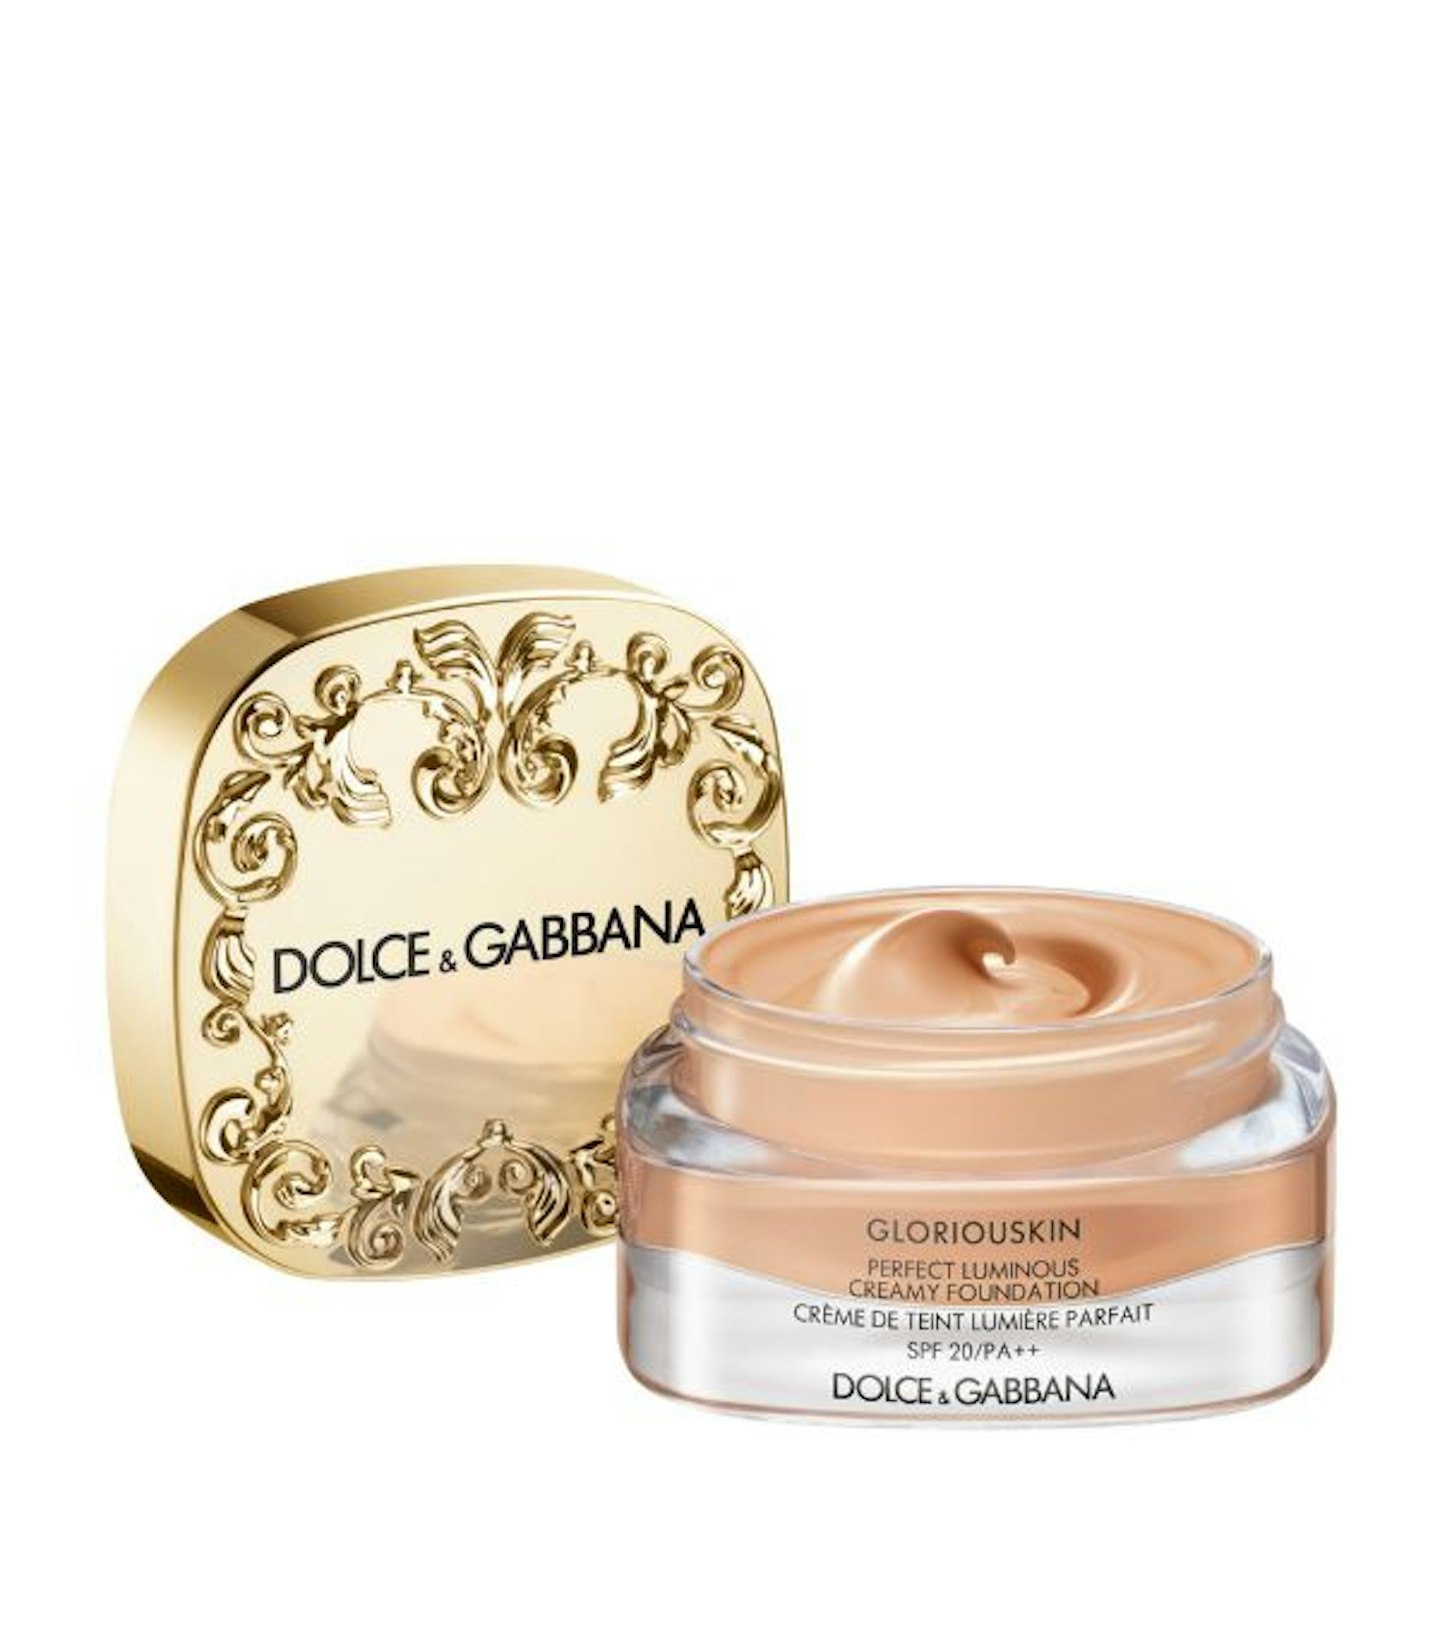 Dolce & Gabbana Gloriouskin Perfect Luminous Foundation, £92